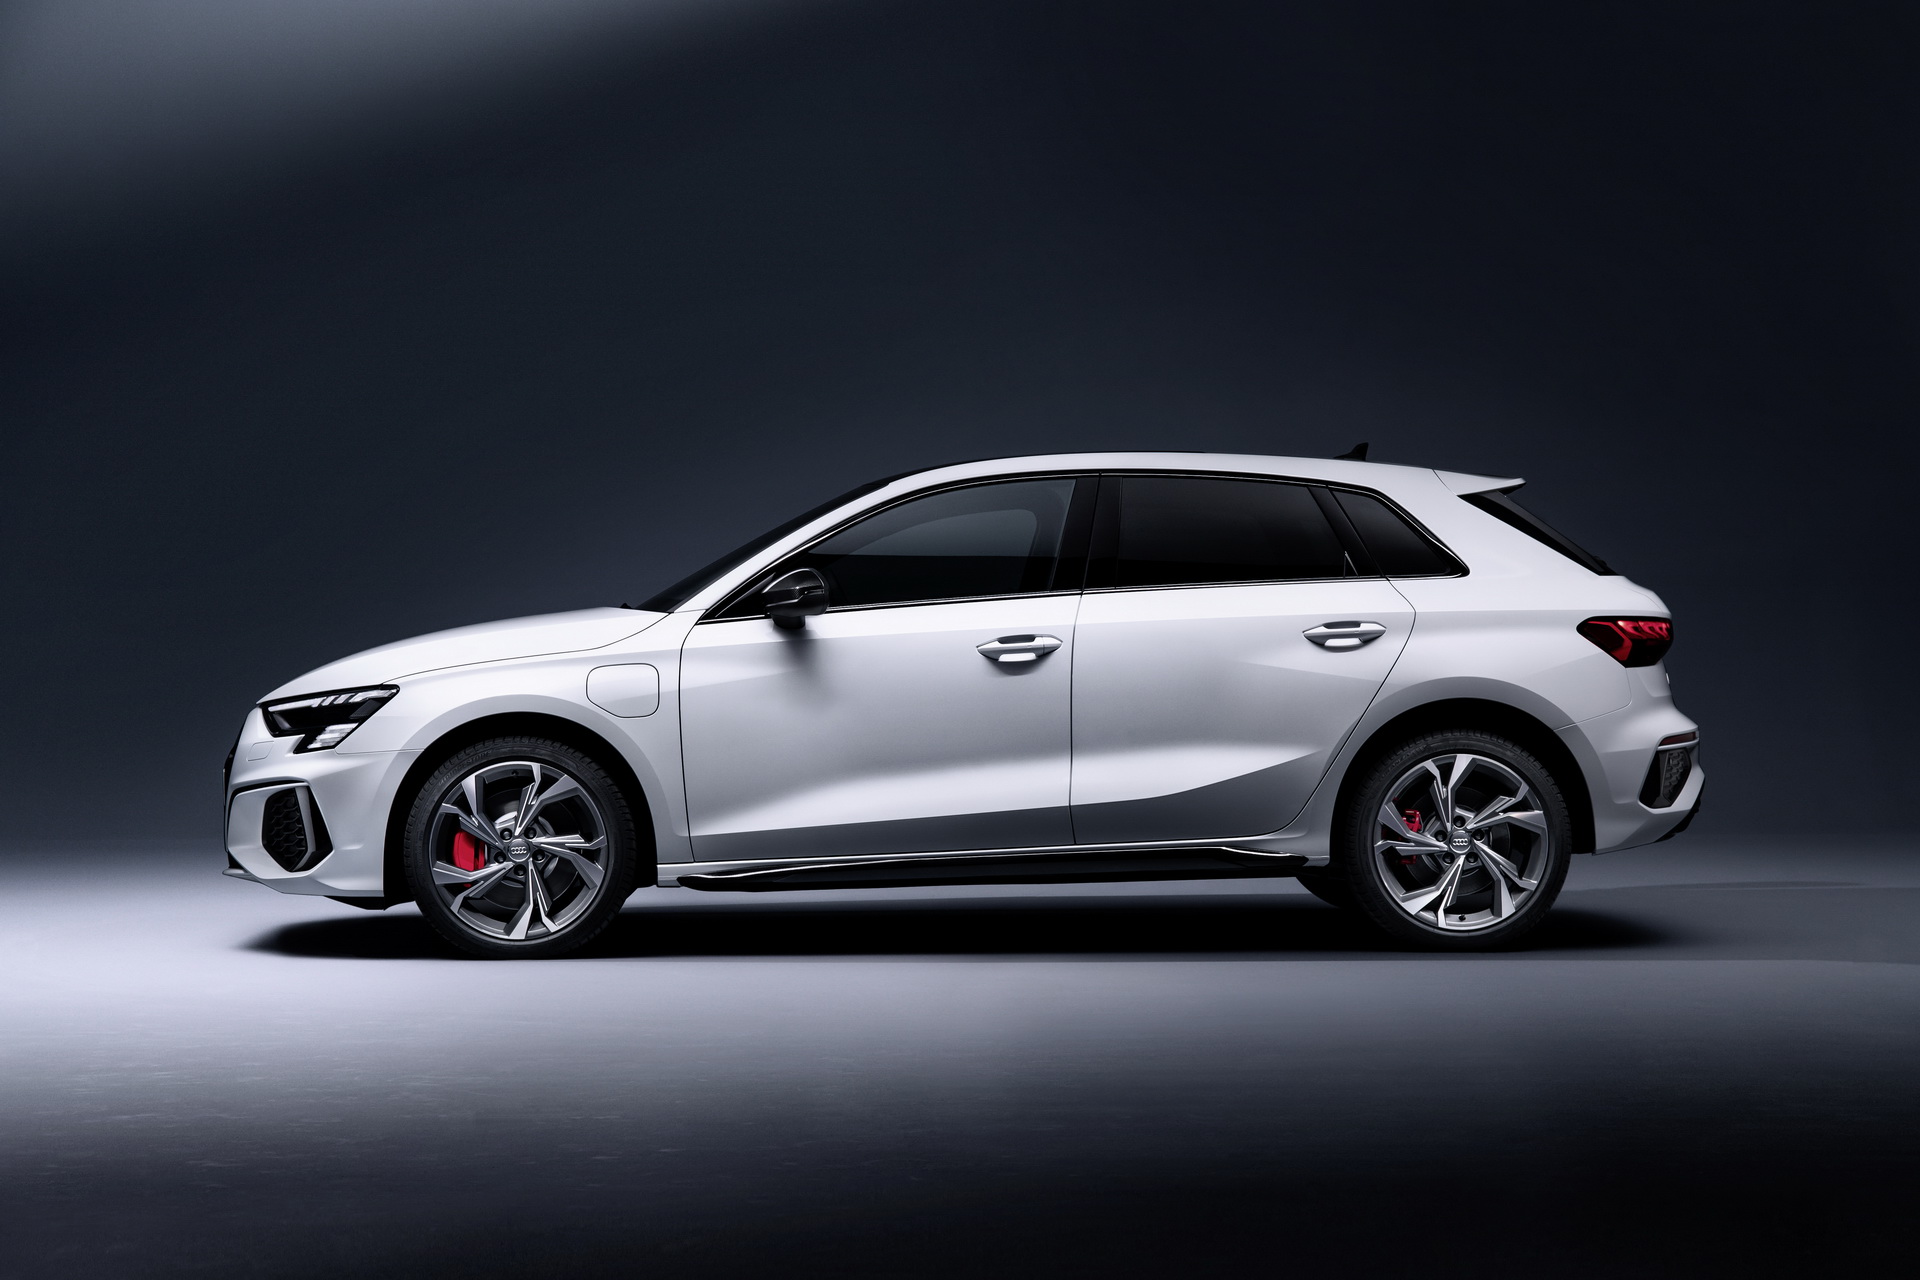 Az A3 lesz a belépő Audi szint, de a németek több modellel is készülnek még a szegmensben